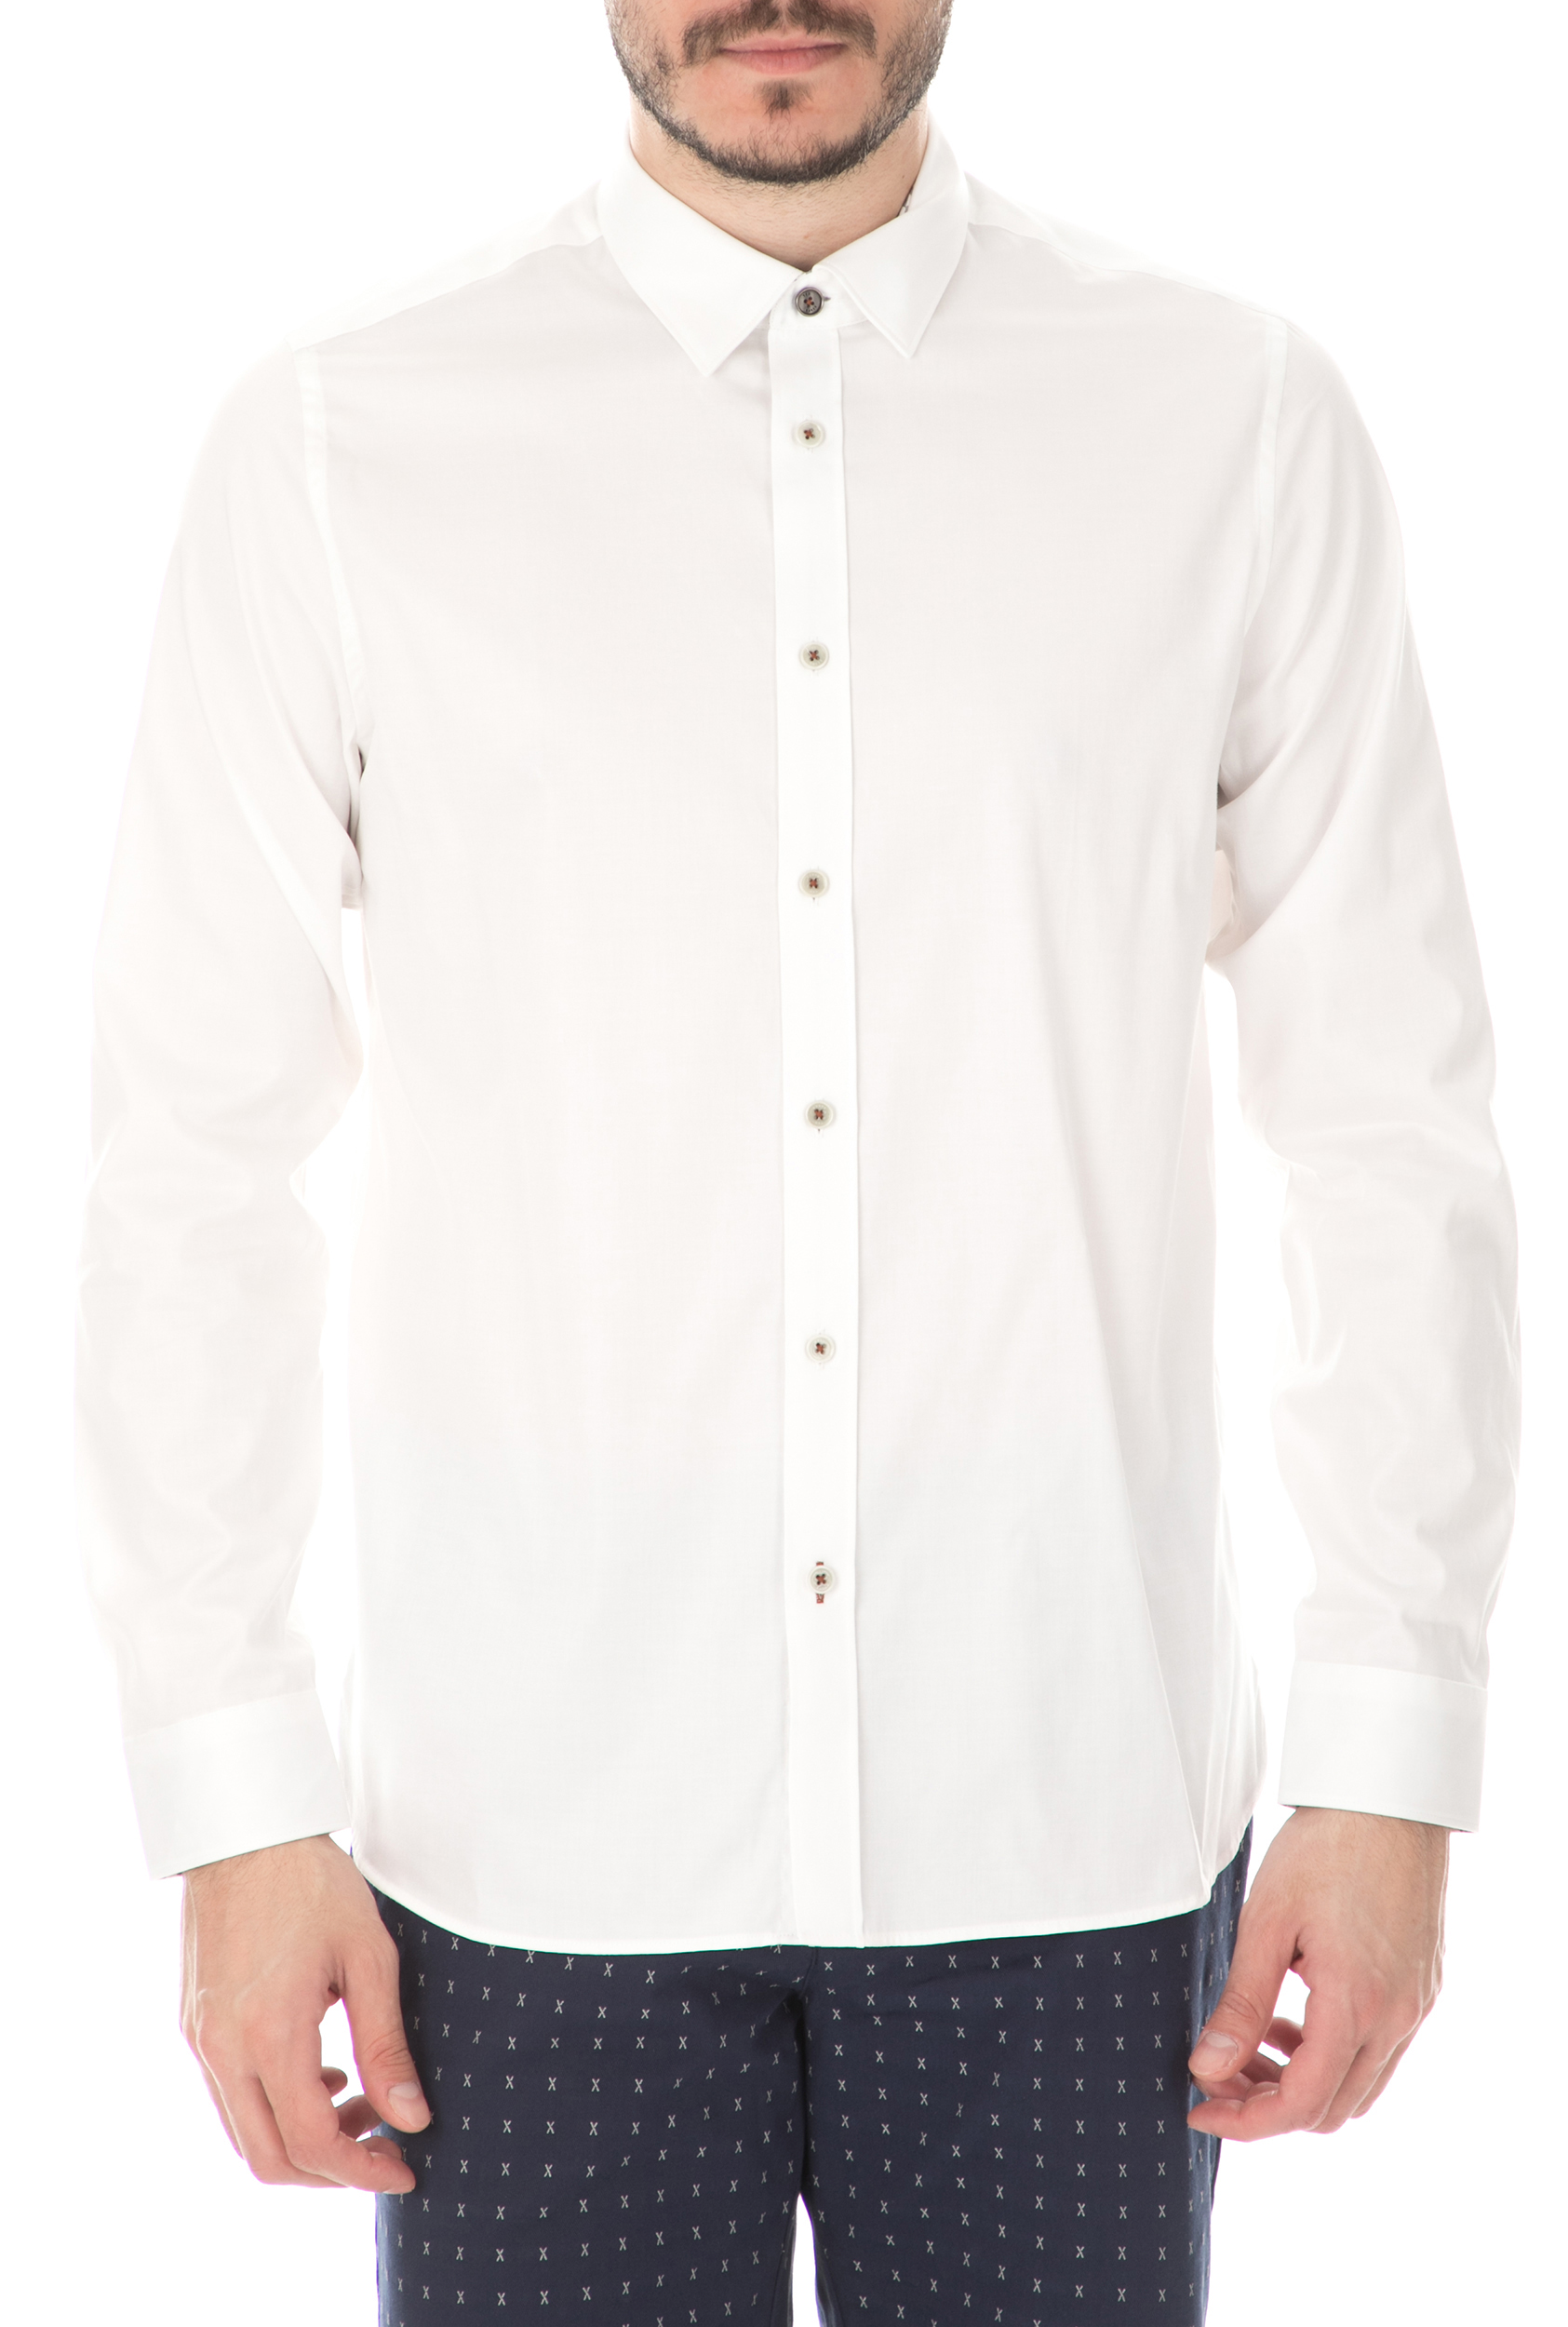 Ανδρικά/Ρούχα/Πουκάμισα/Μακρυμάνικα TED BAKER - Ανδρικό πουκάμιο TED BAKER λευκό